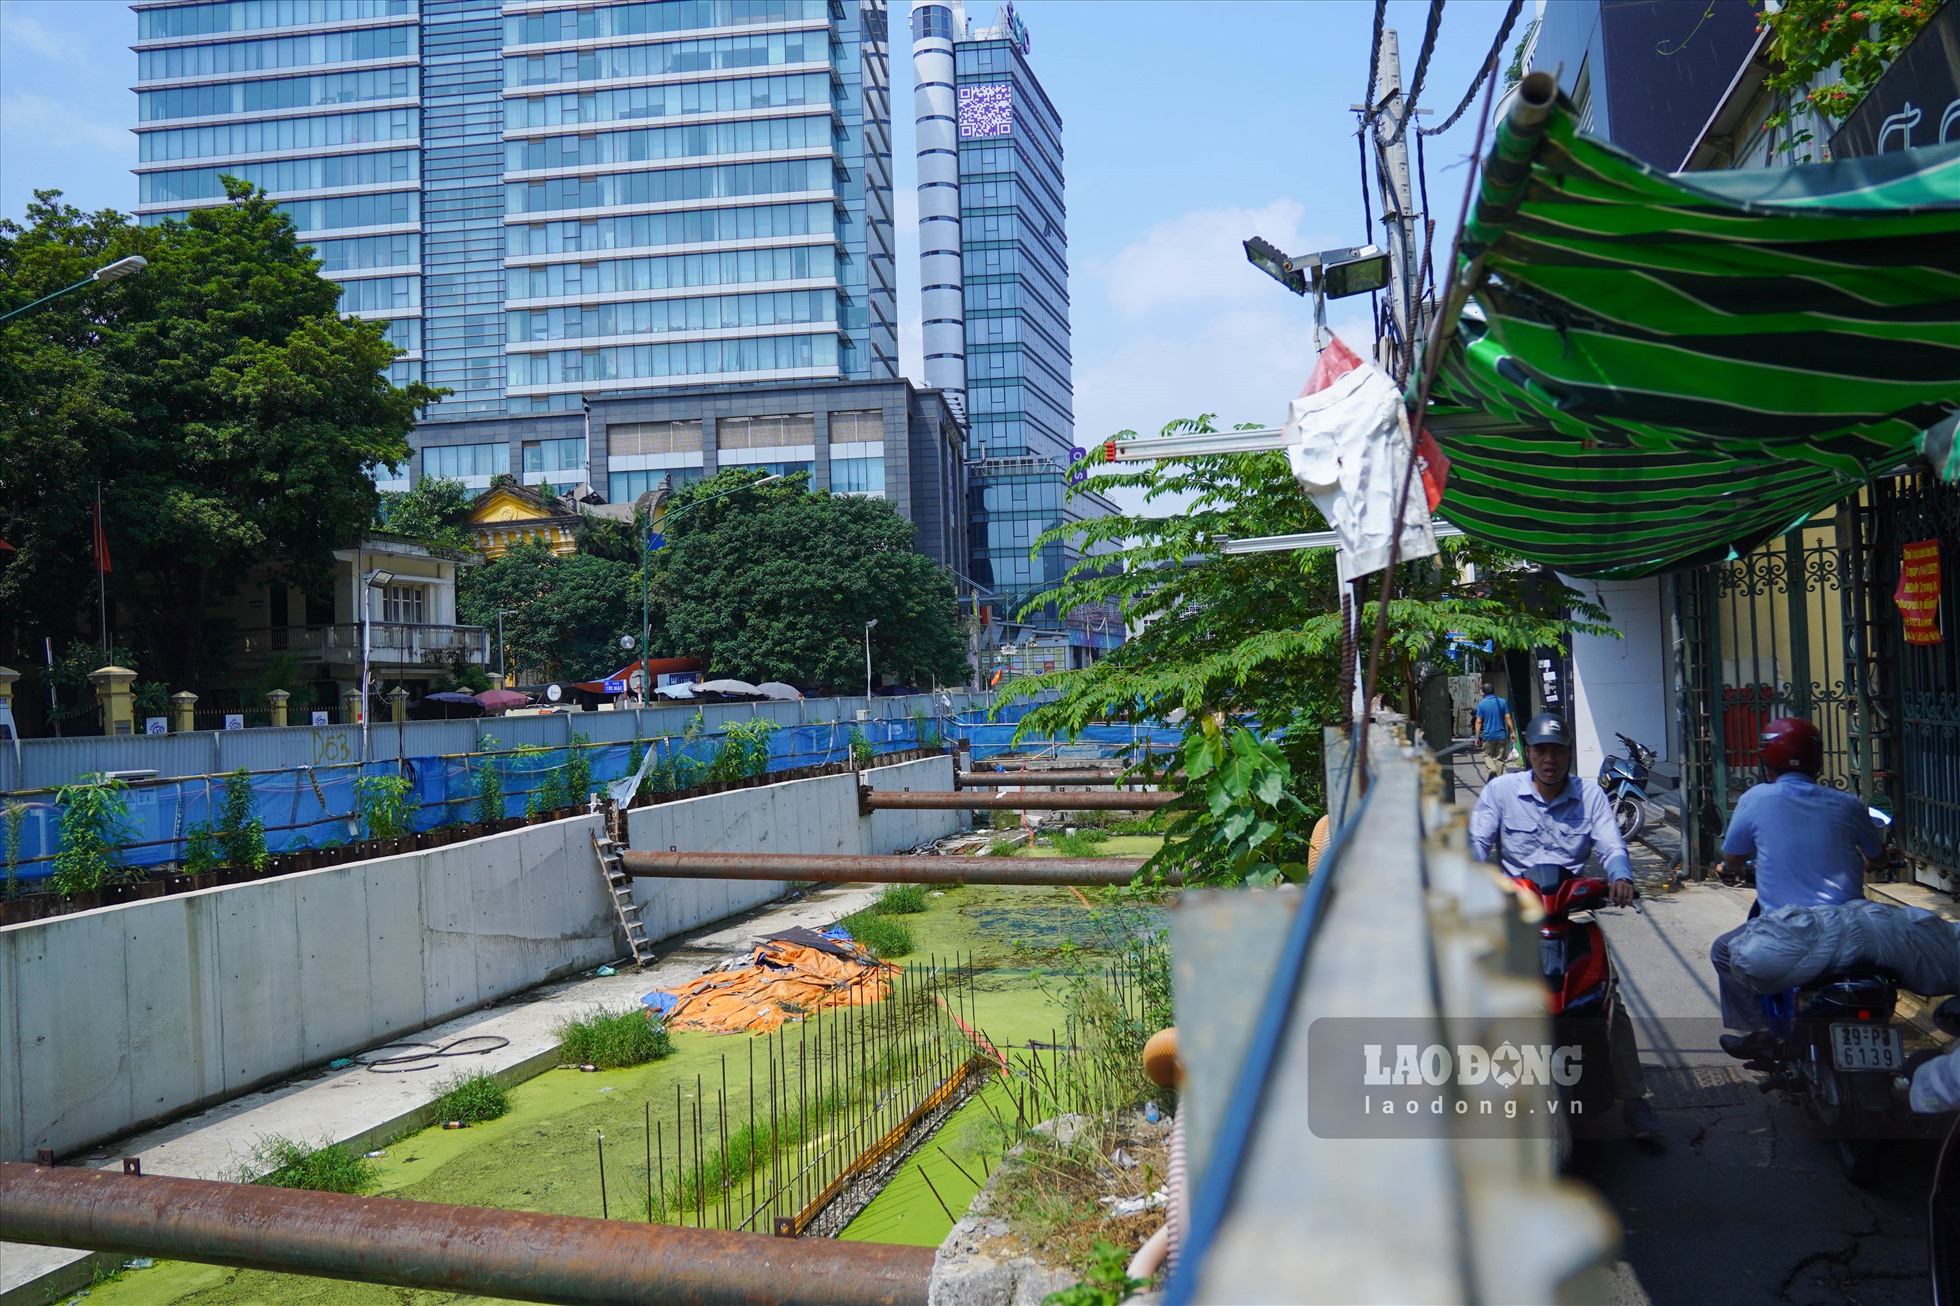 Dãy rào chắn bằng tấm tôn đã được dựng lên để phục vụ thi công khiến phần đường dành cho các phương tiện di chuyển theo hướng Trần Hưng Đạo đi Phan Bội Châu thu hẹp lại.